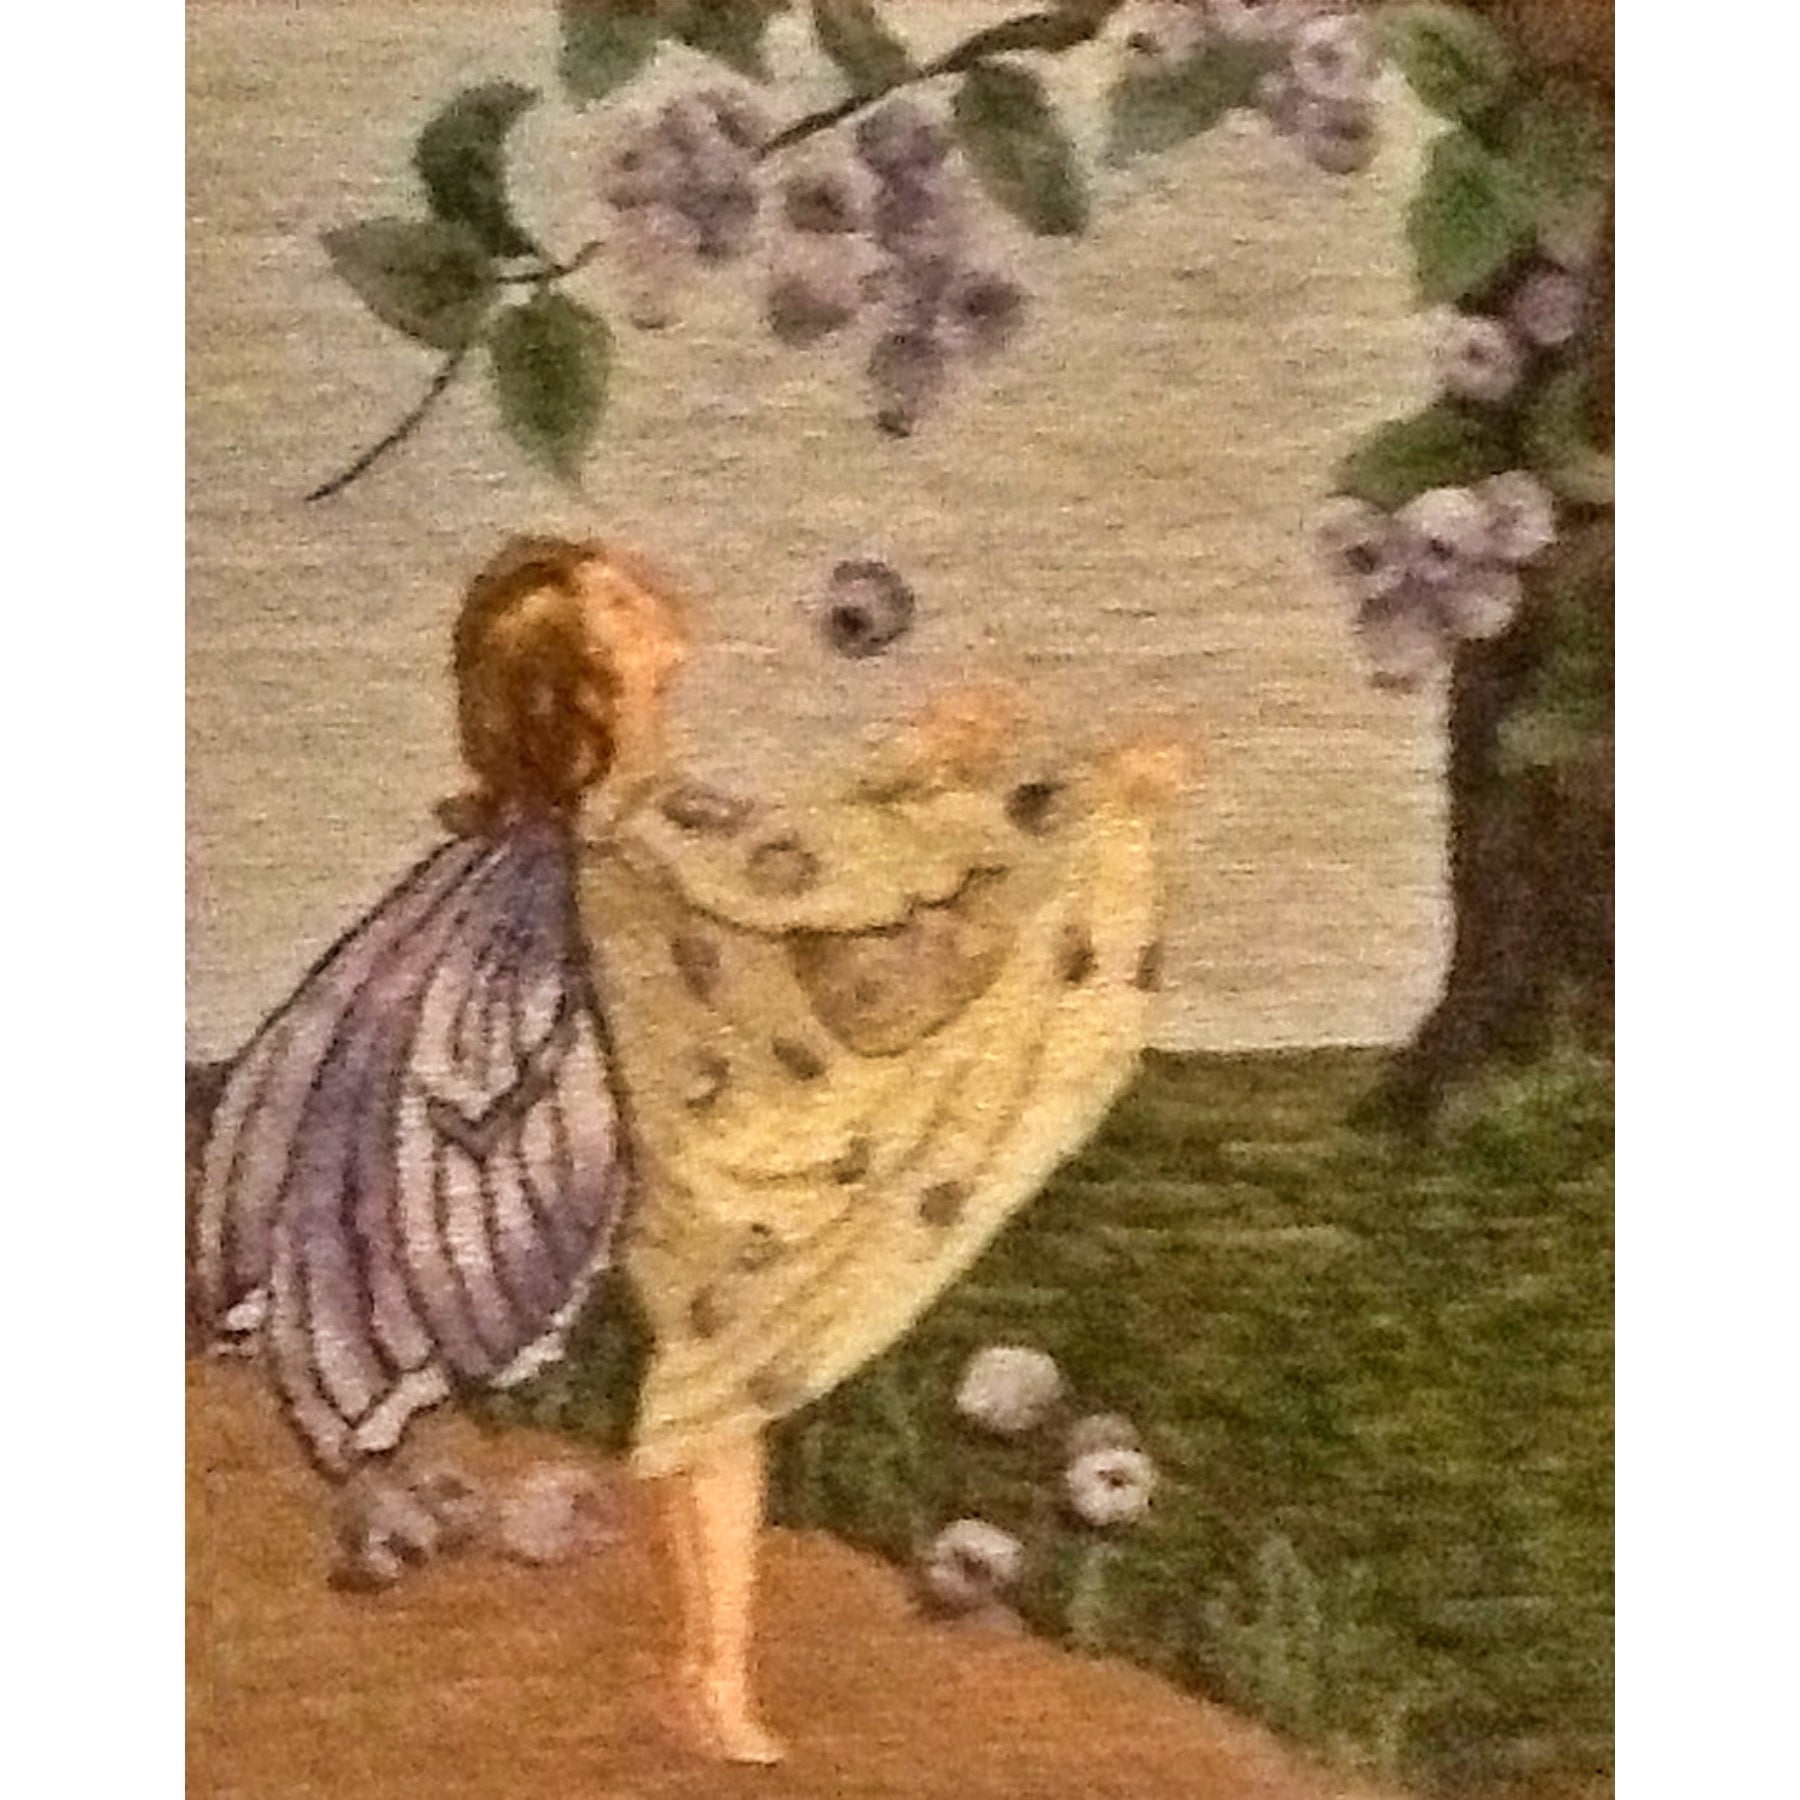 Blueberry Fairy, rug hooked by Jenny Podlasek